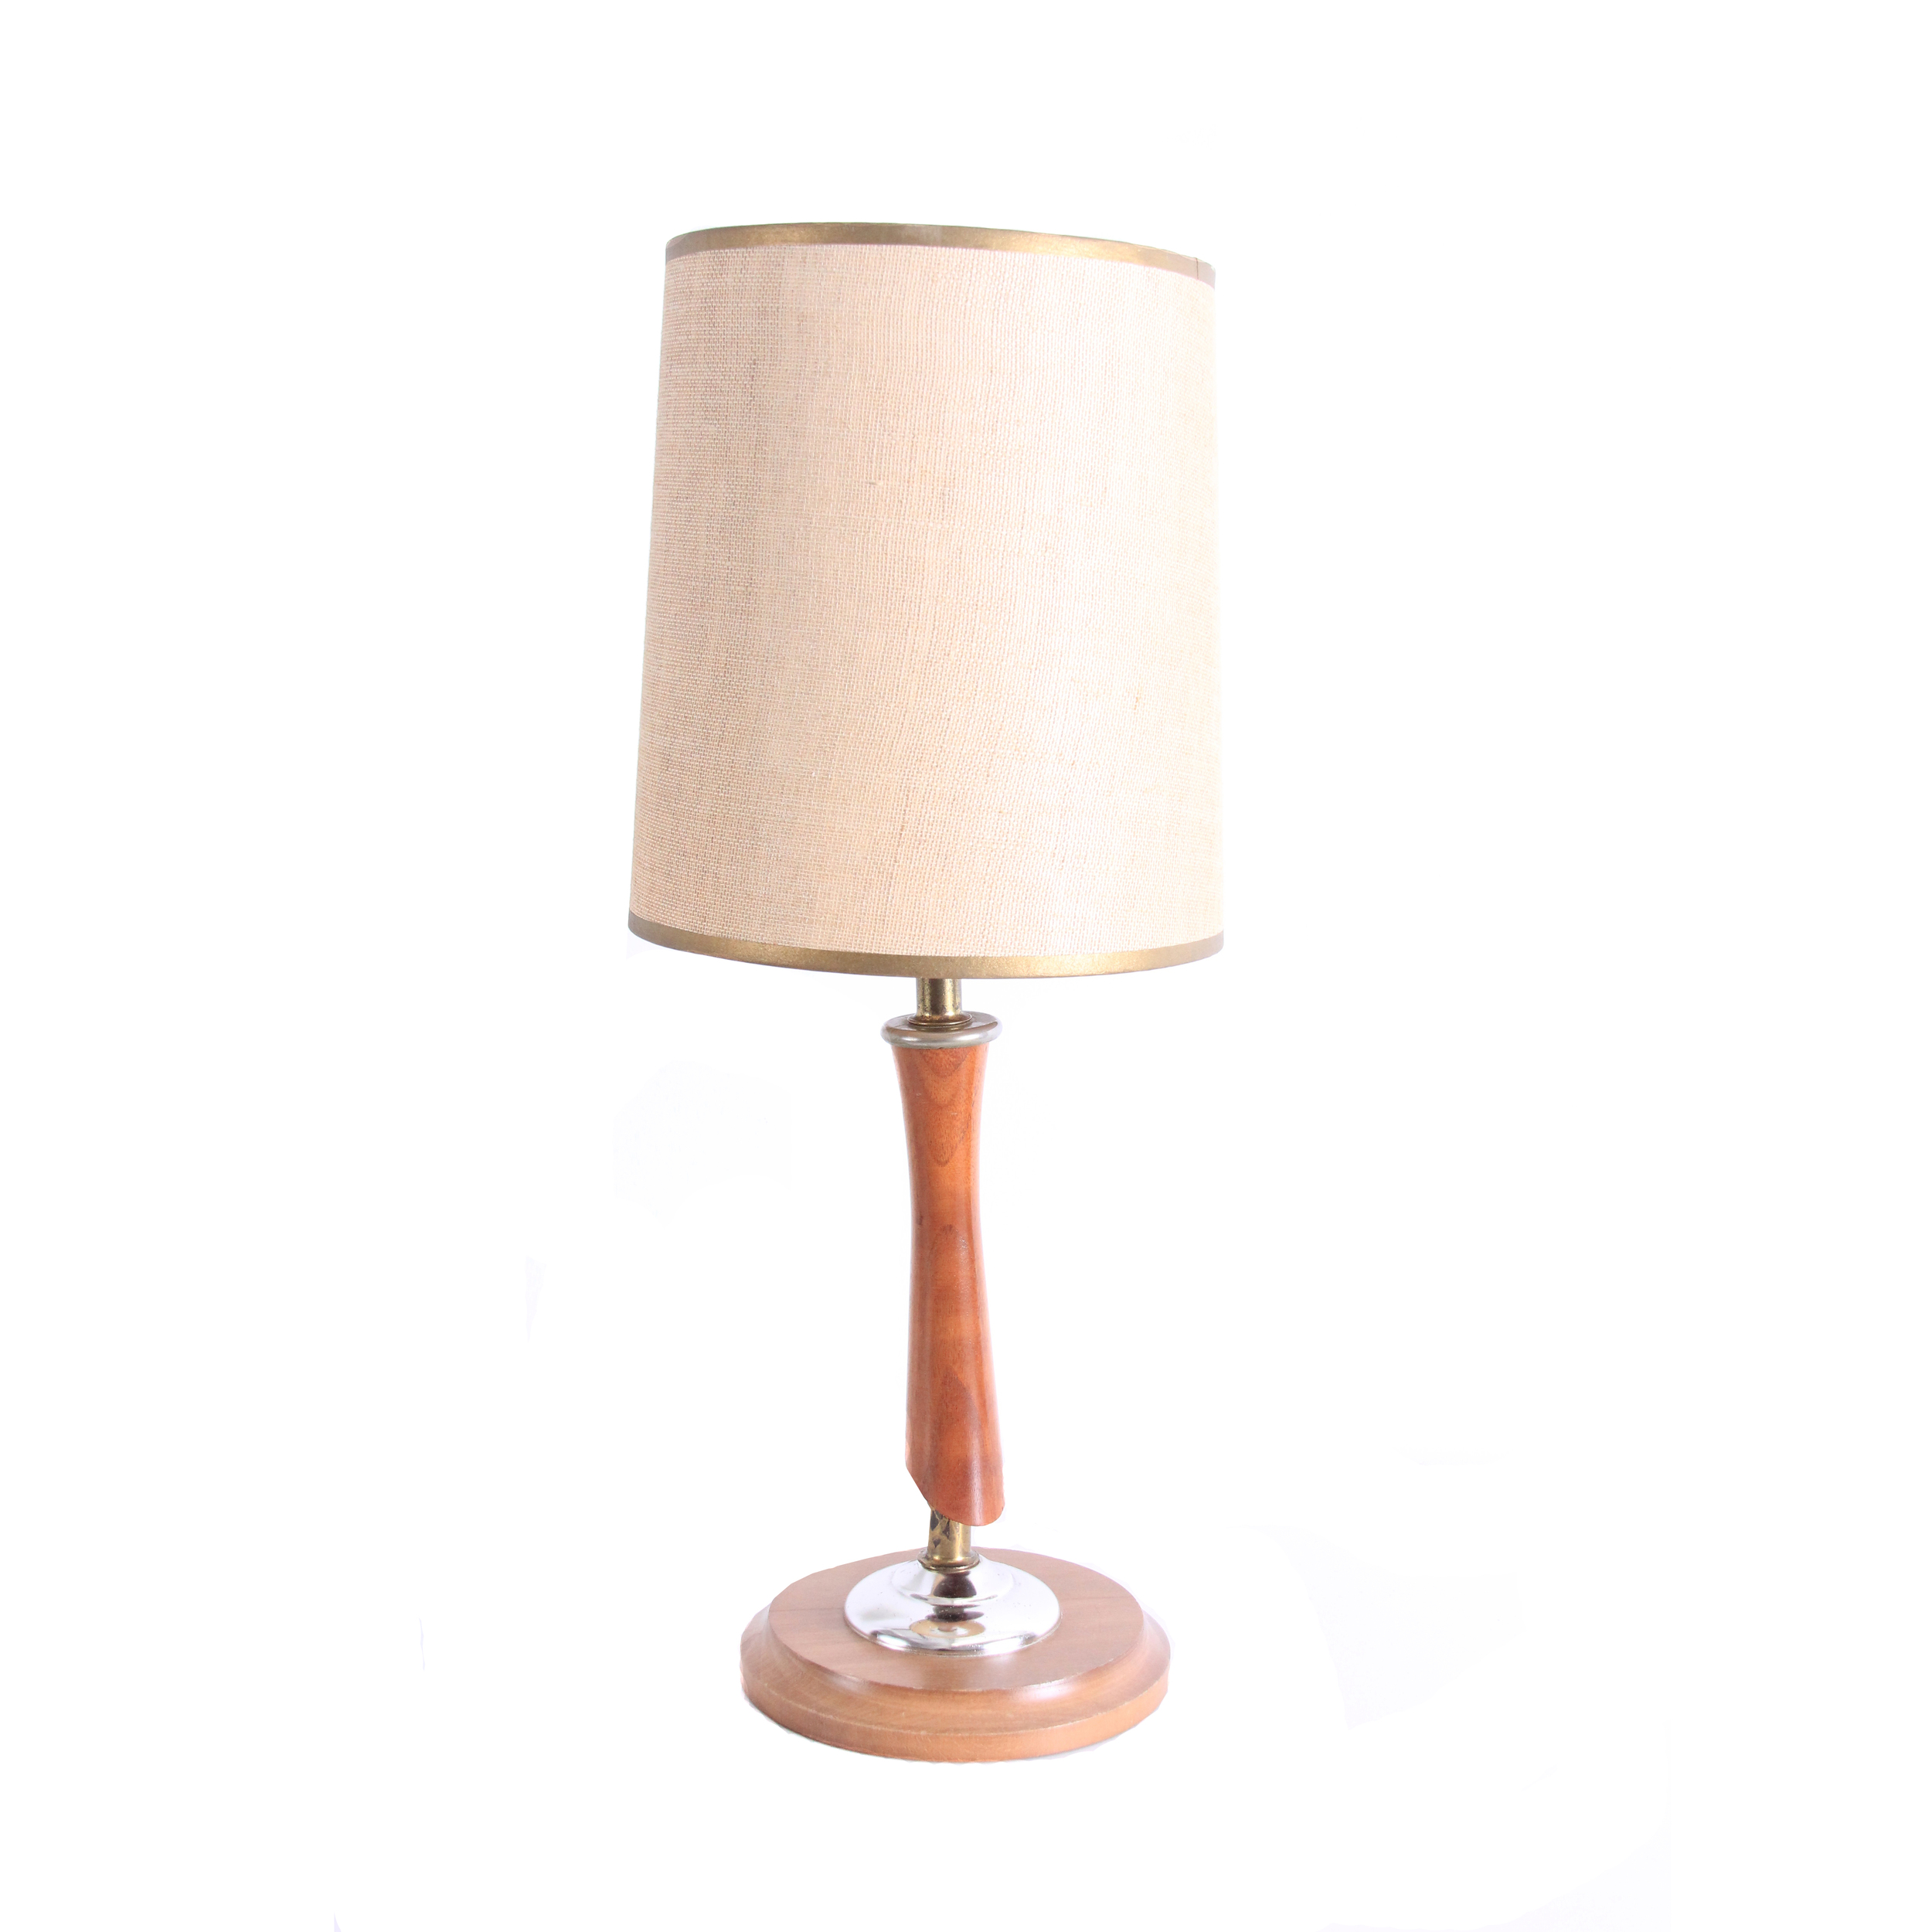 Vintage Mid Century Modern Wood Lamp